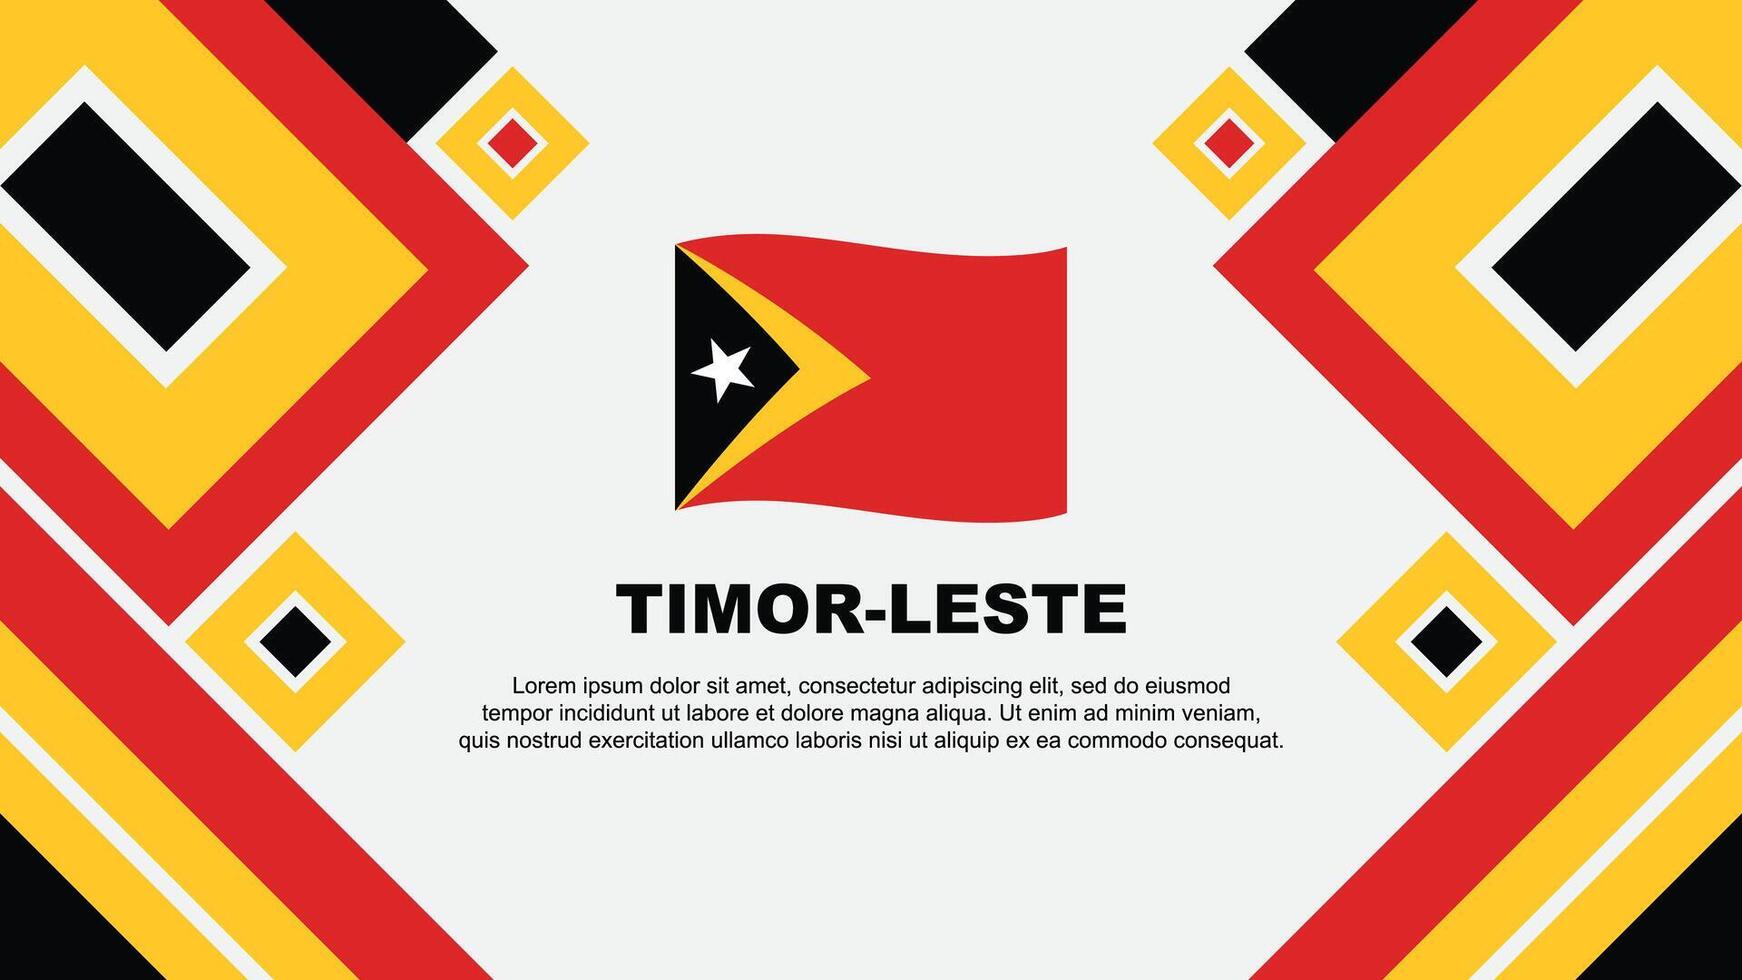 Timor Leste Flag Abstract Background Design Template. Timor Leste Independence Day Banner Wallpaper Vector Illustration. Timor Leste Cartoon